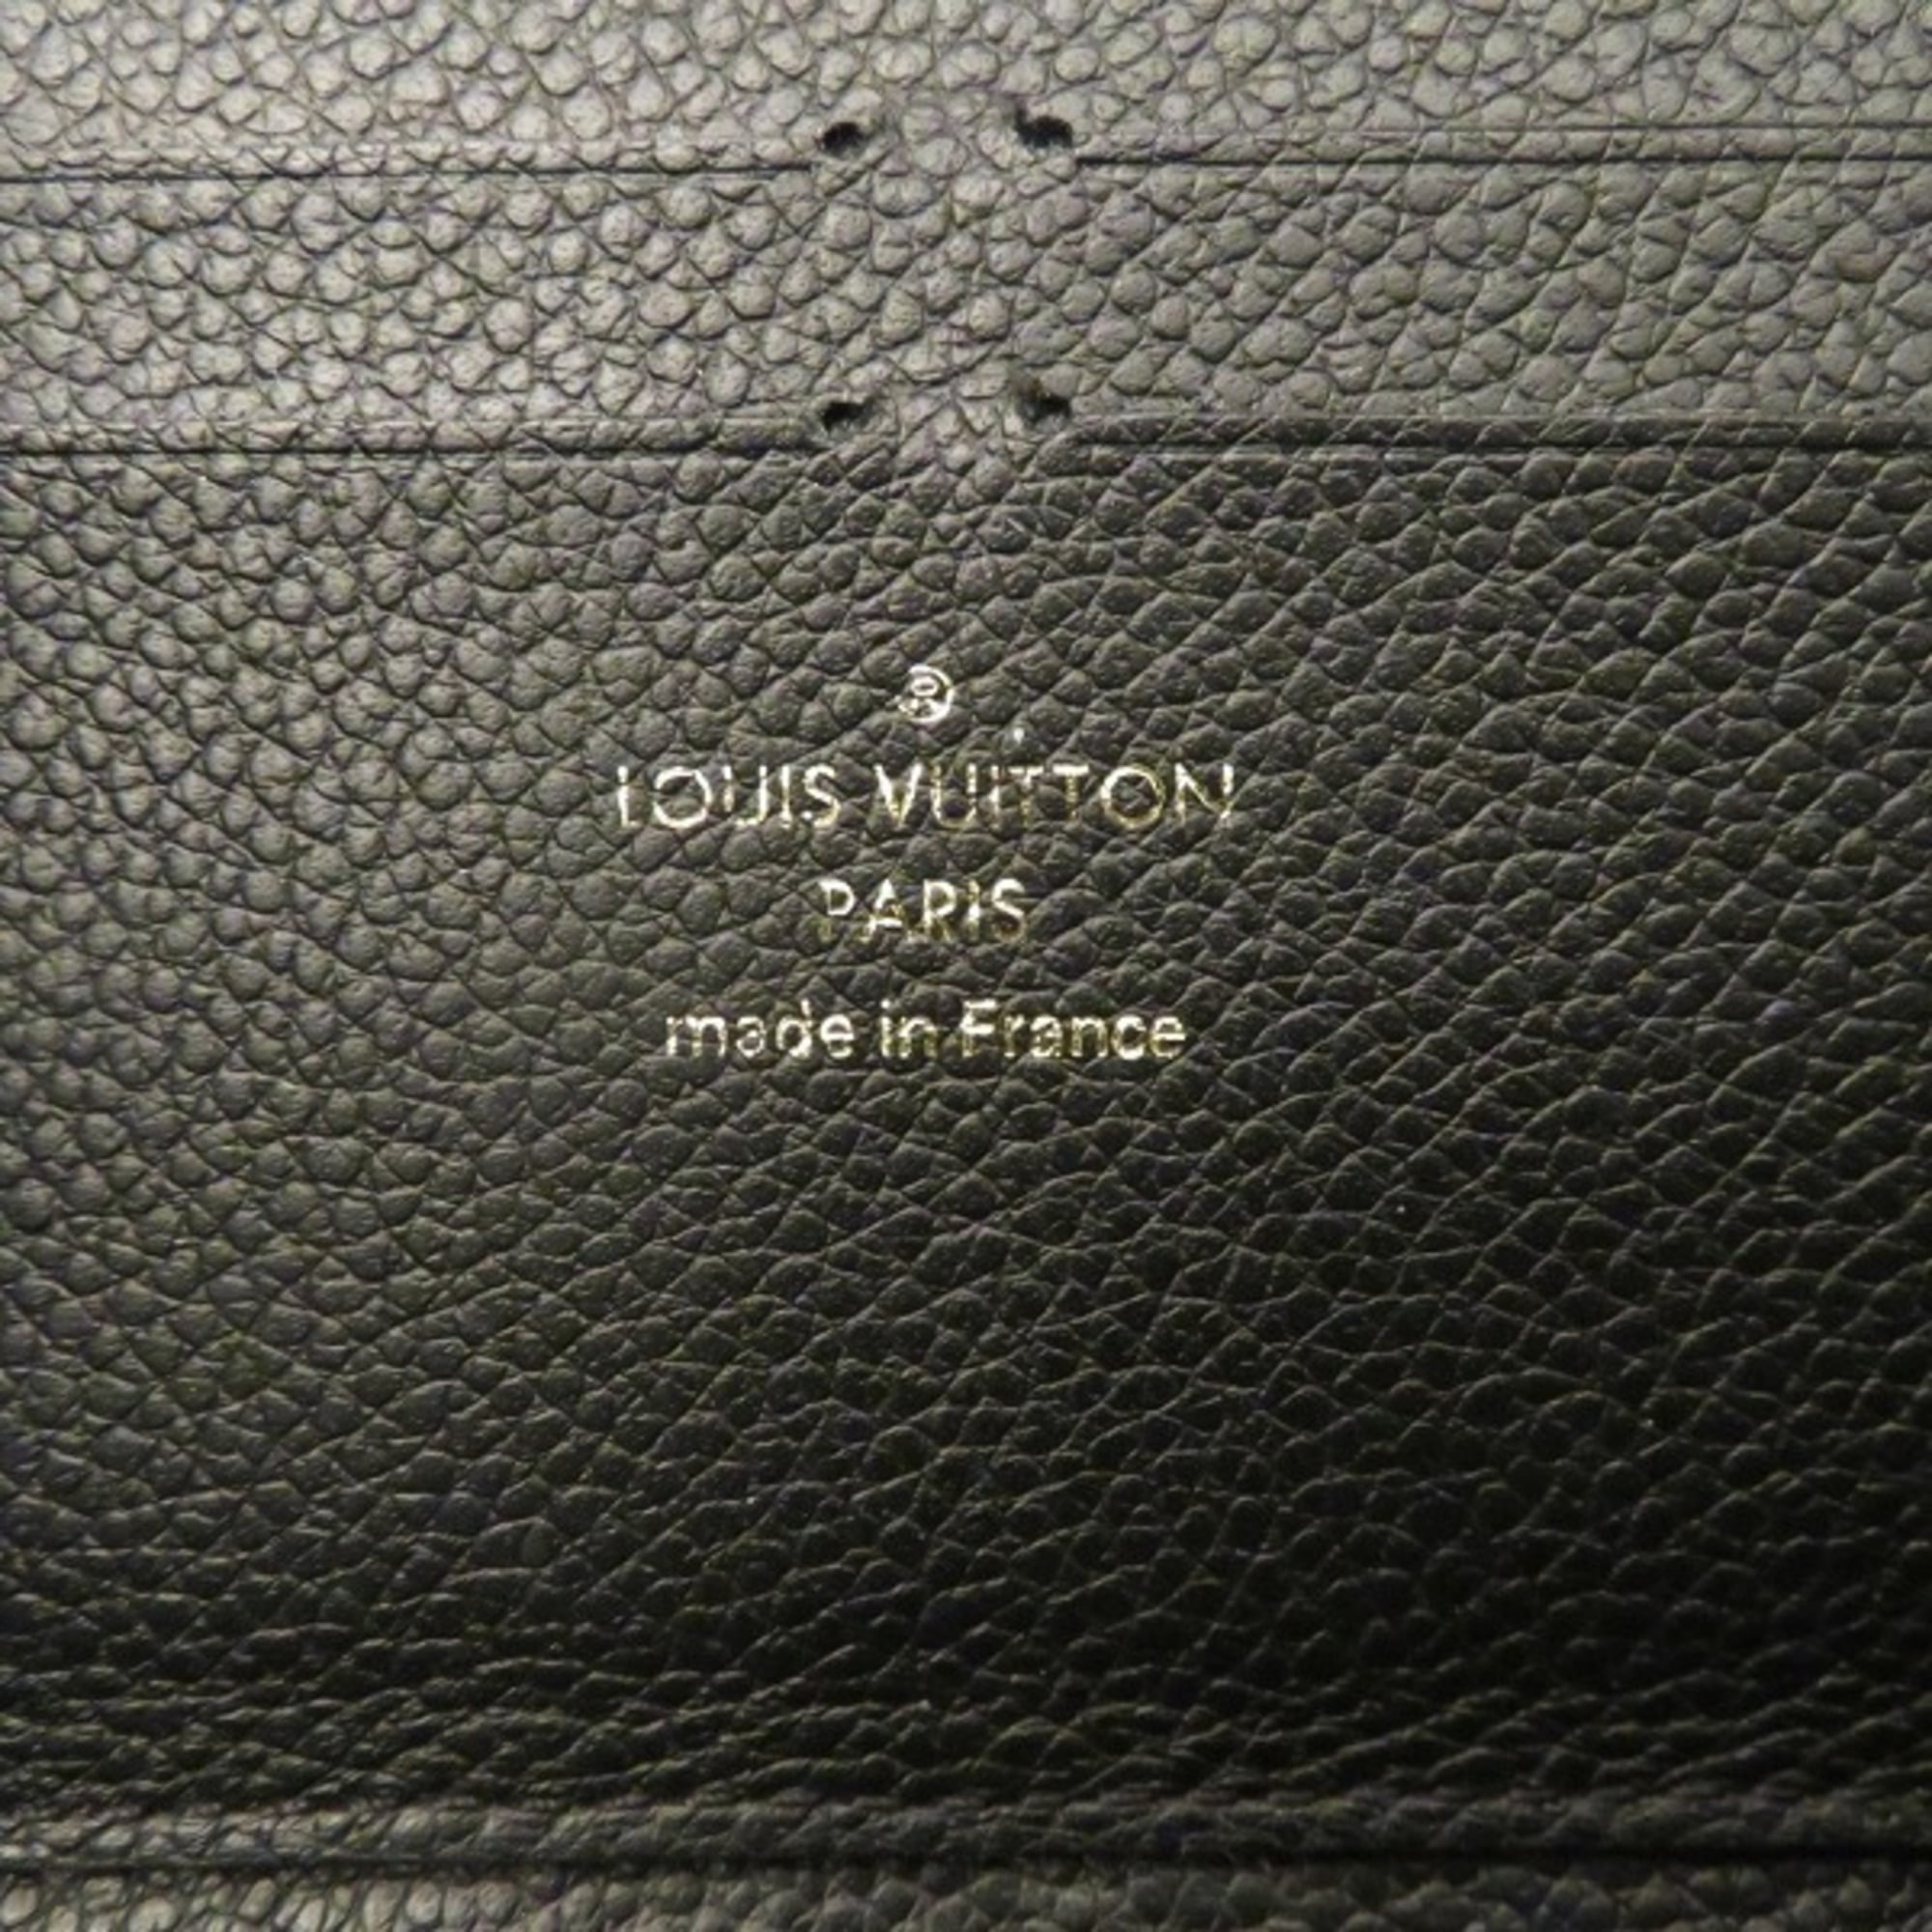 Louis Vuitton Monogram Implant Portefeuille Clemence Wallet